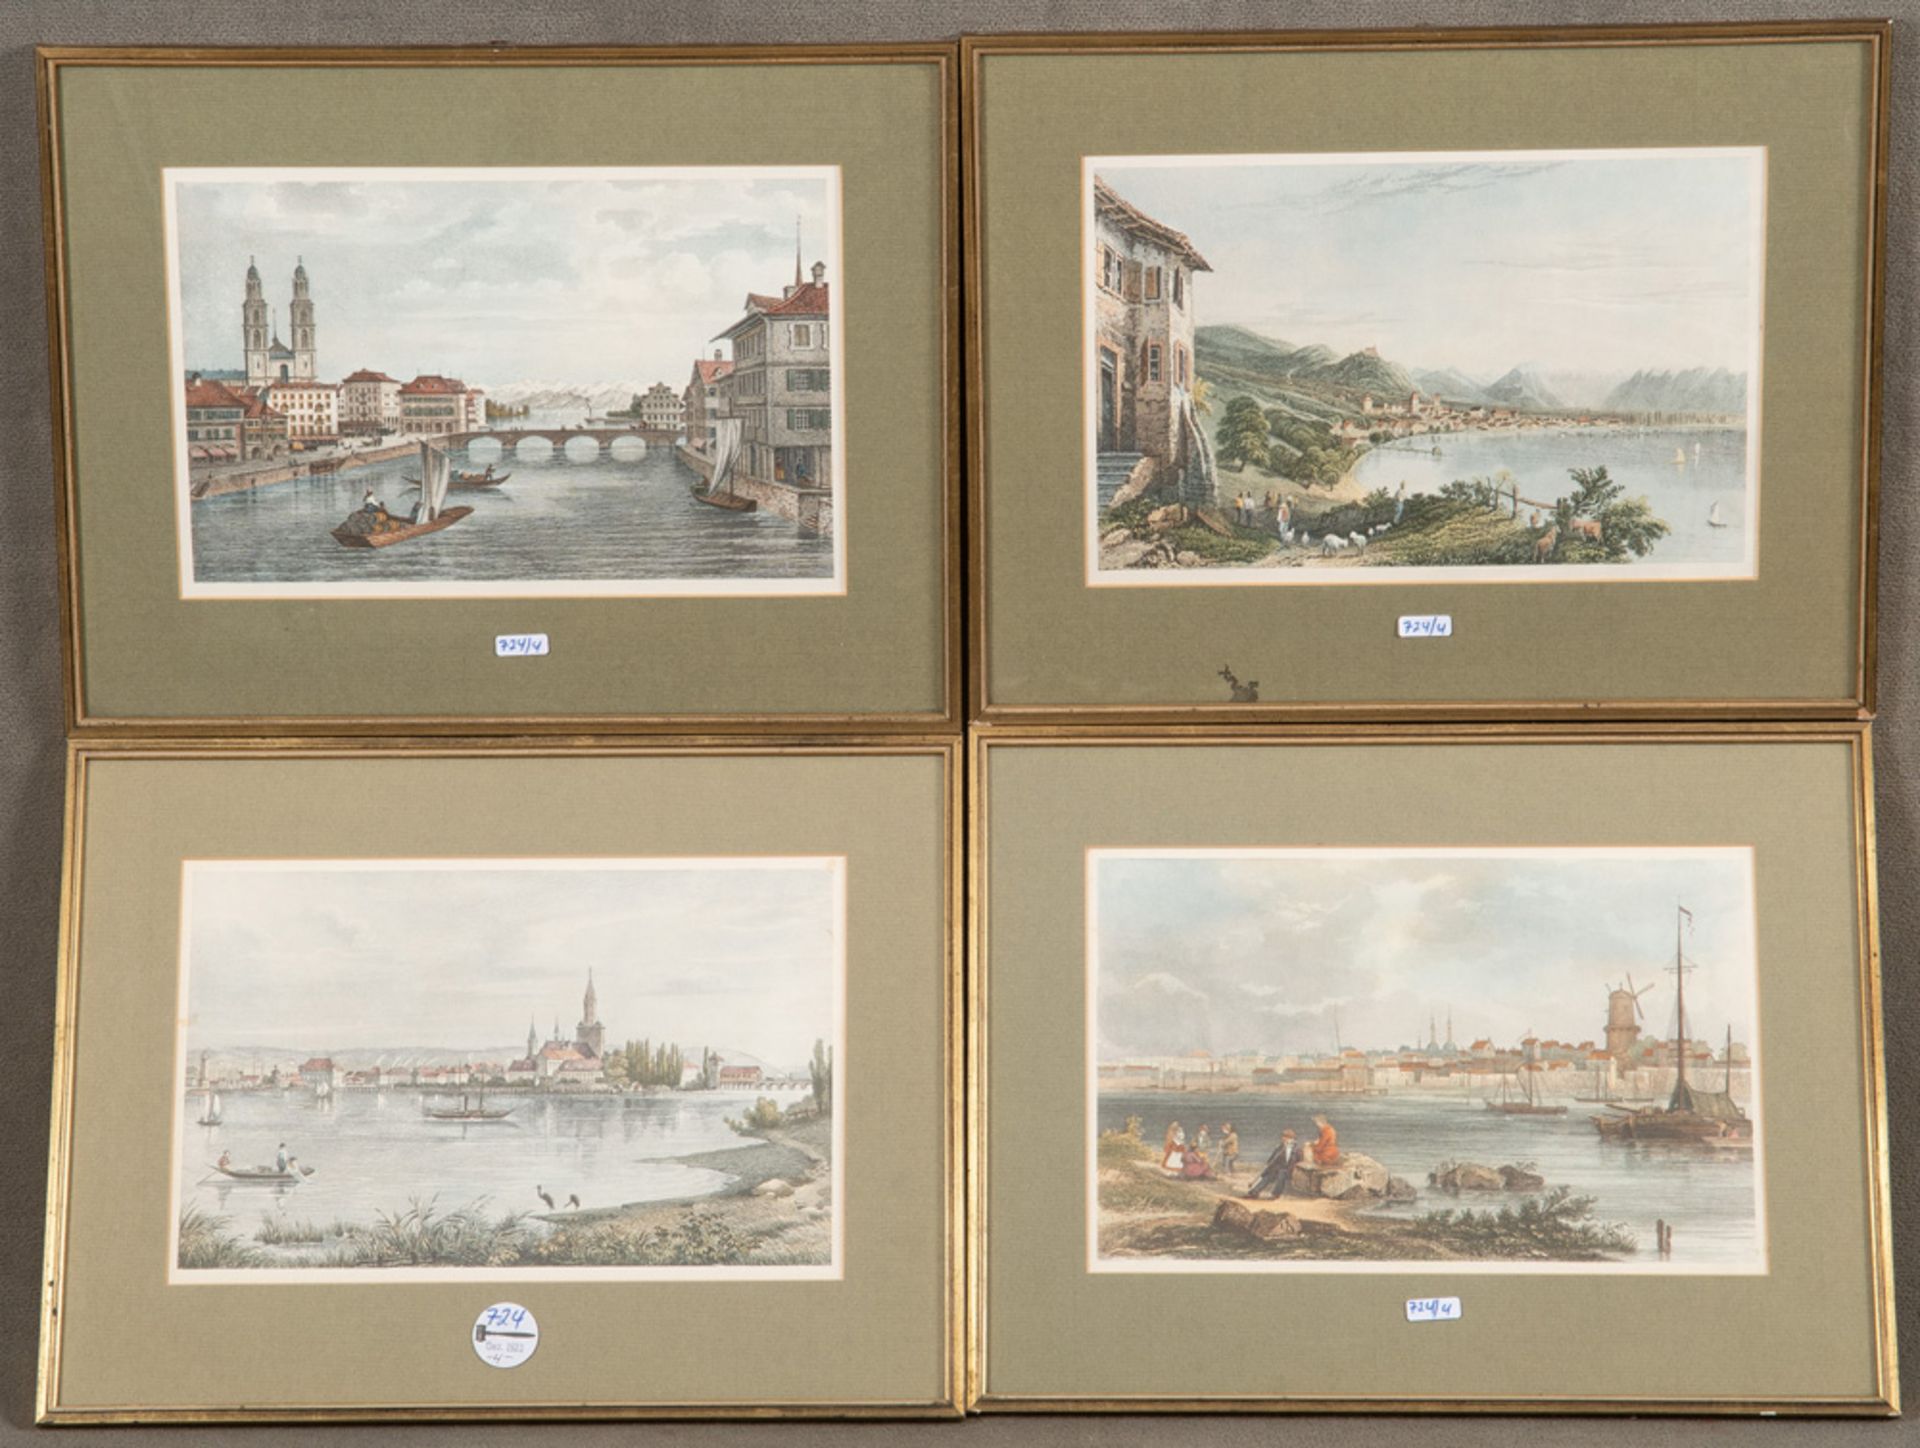 Graphiker des 19. Jhs. Stadtansichten an Fluss bzw. Bucht. Vier colorierte Stahlstiche, mit